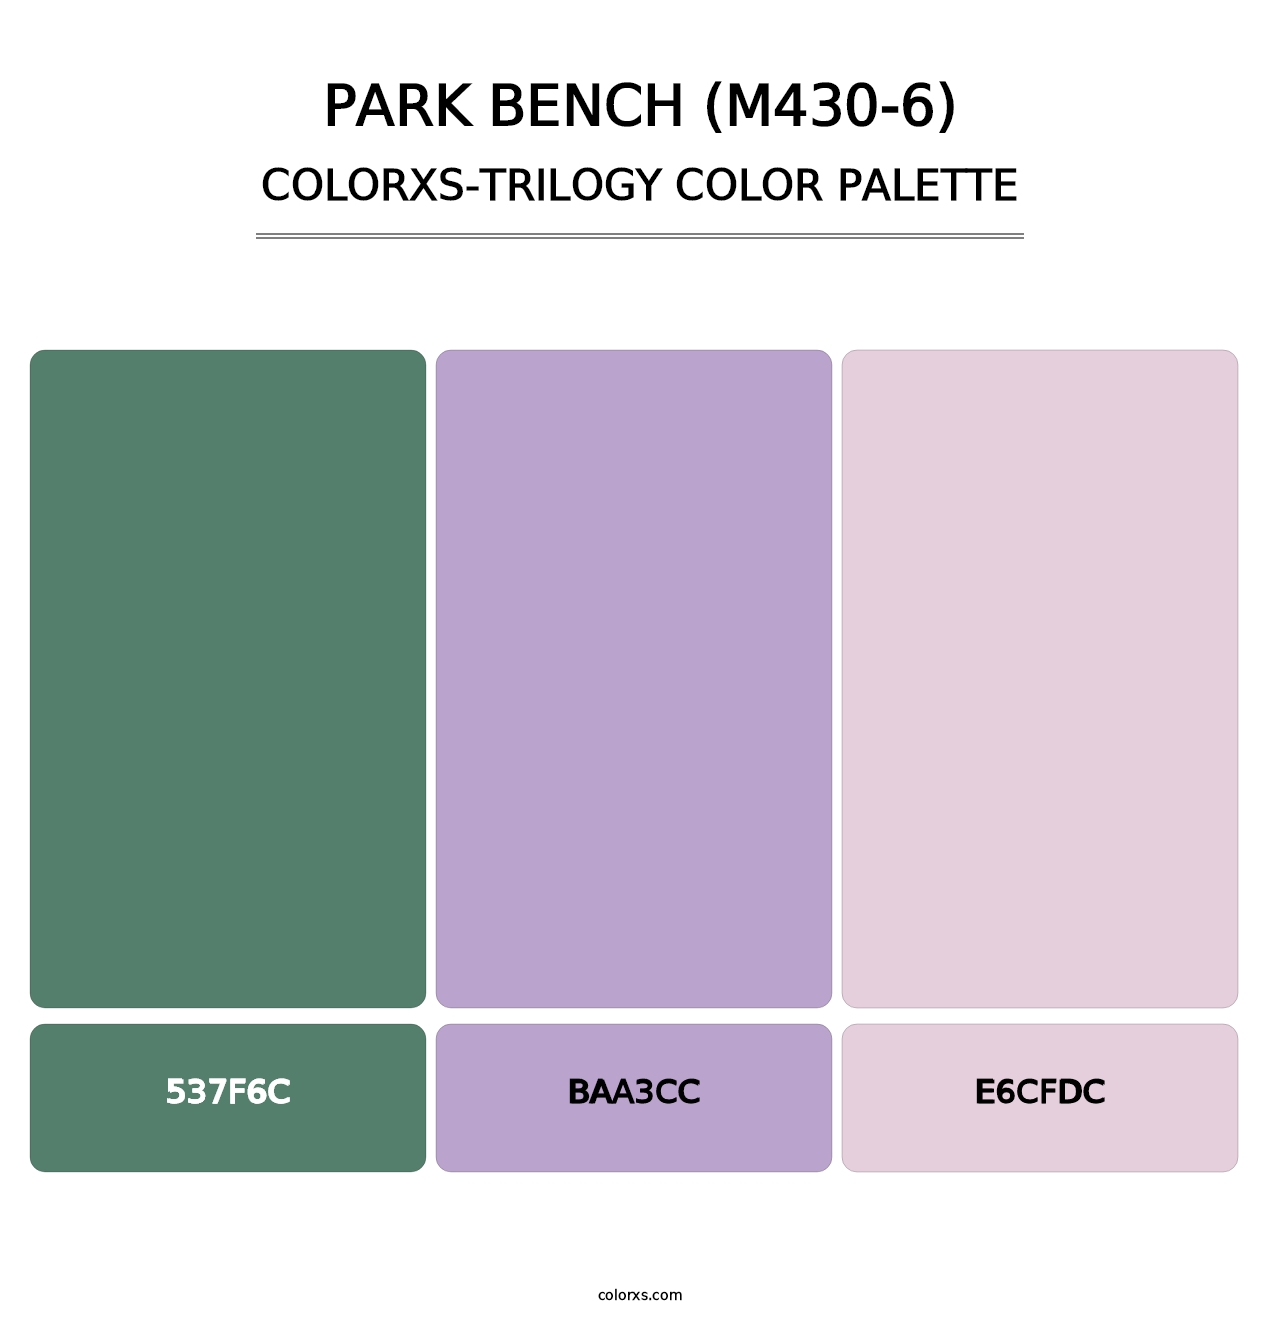 Park Bench (M430-6) - Colorxs Trilogy Palette